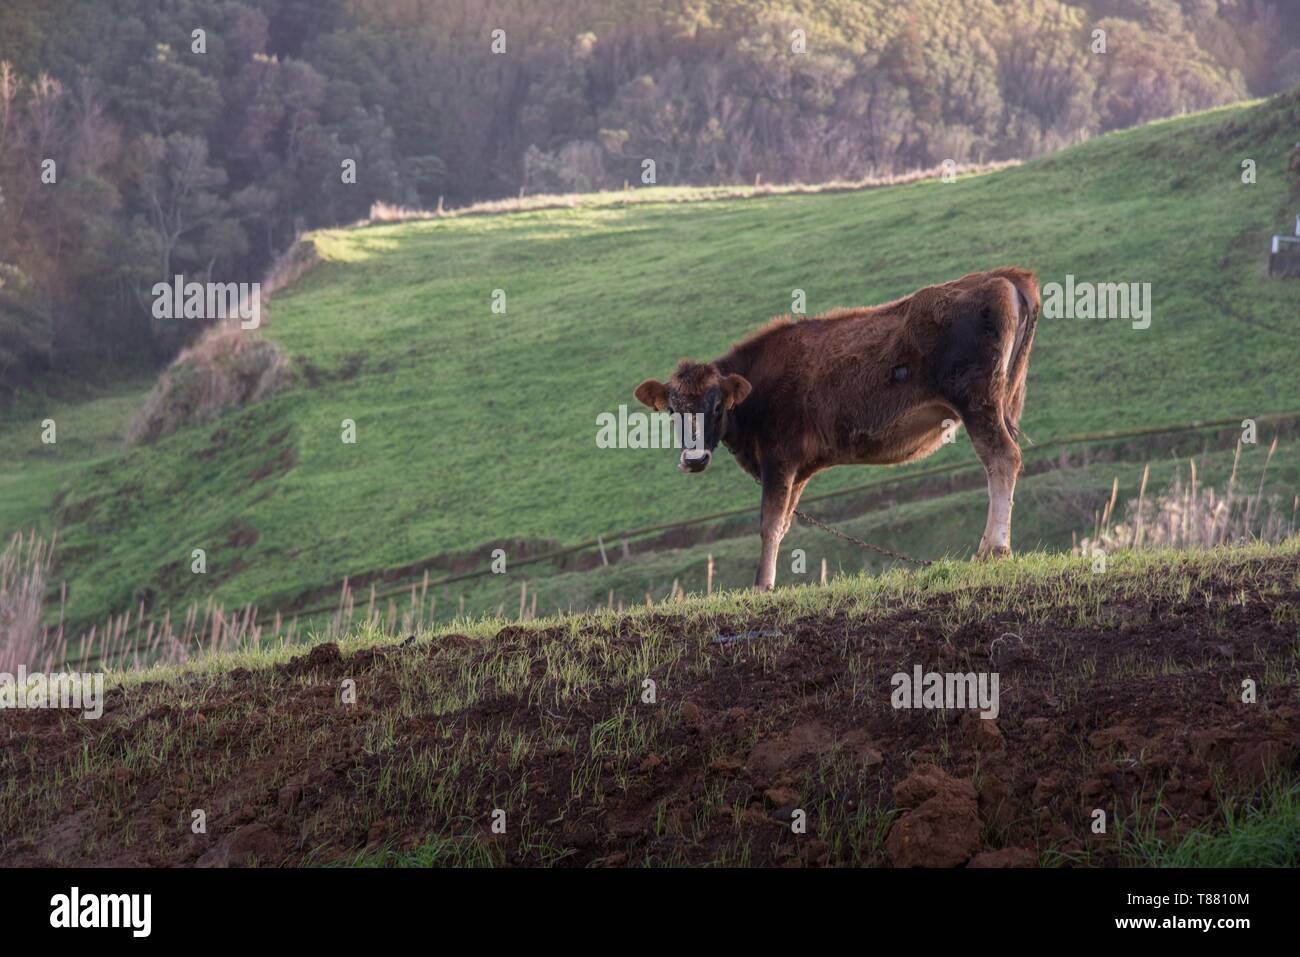 Vache sur une pente Kuh am Hang Banque D'Images